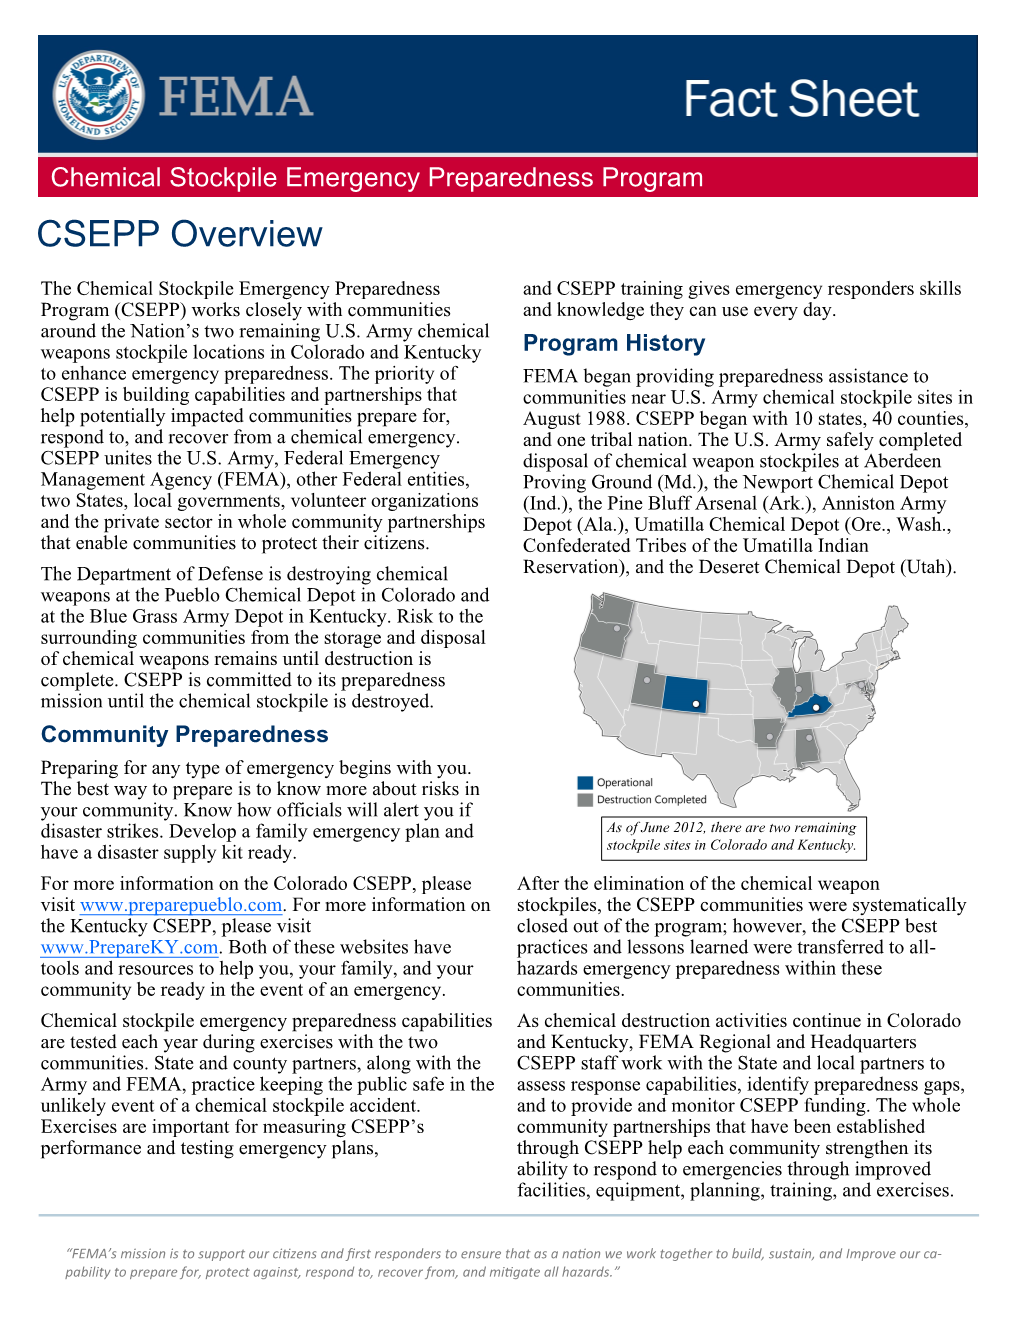 Chemical Stockpile Emergency Preparedness Program CSEPP Overview